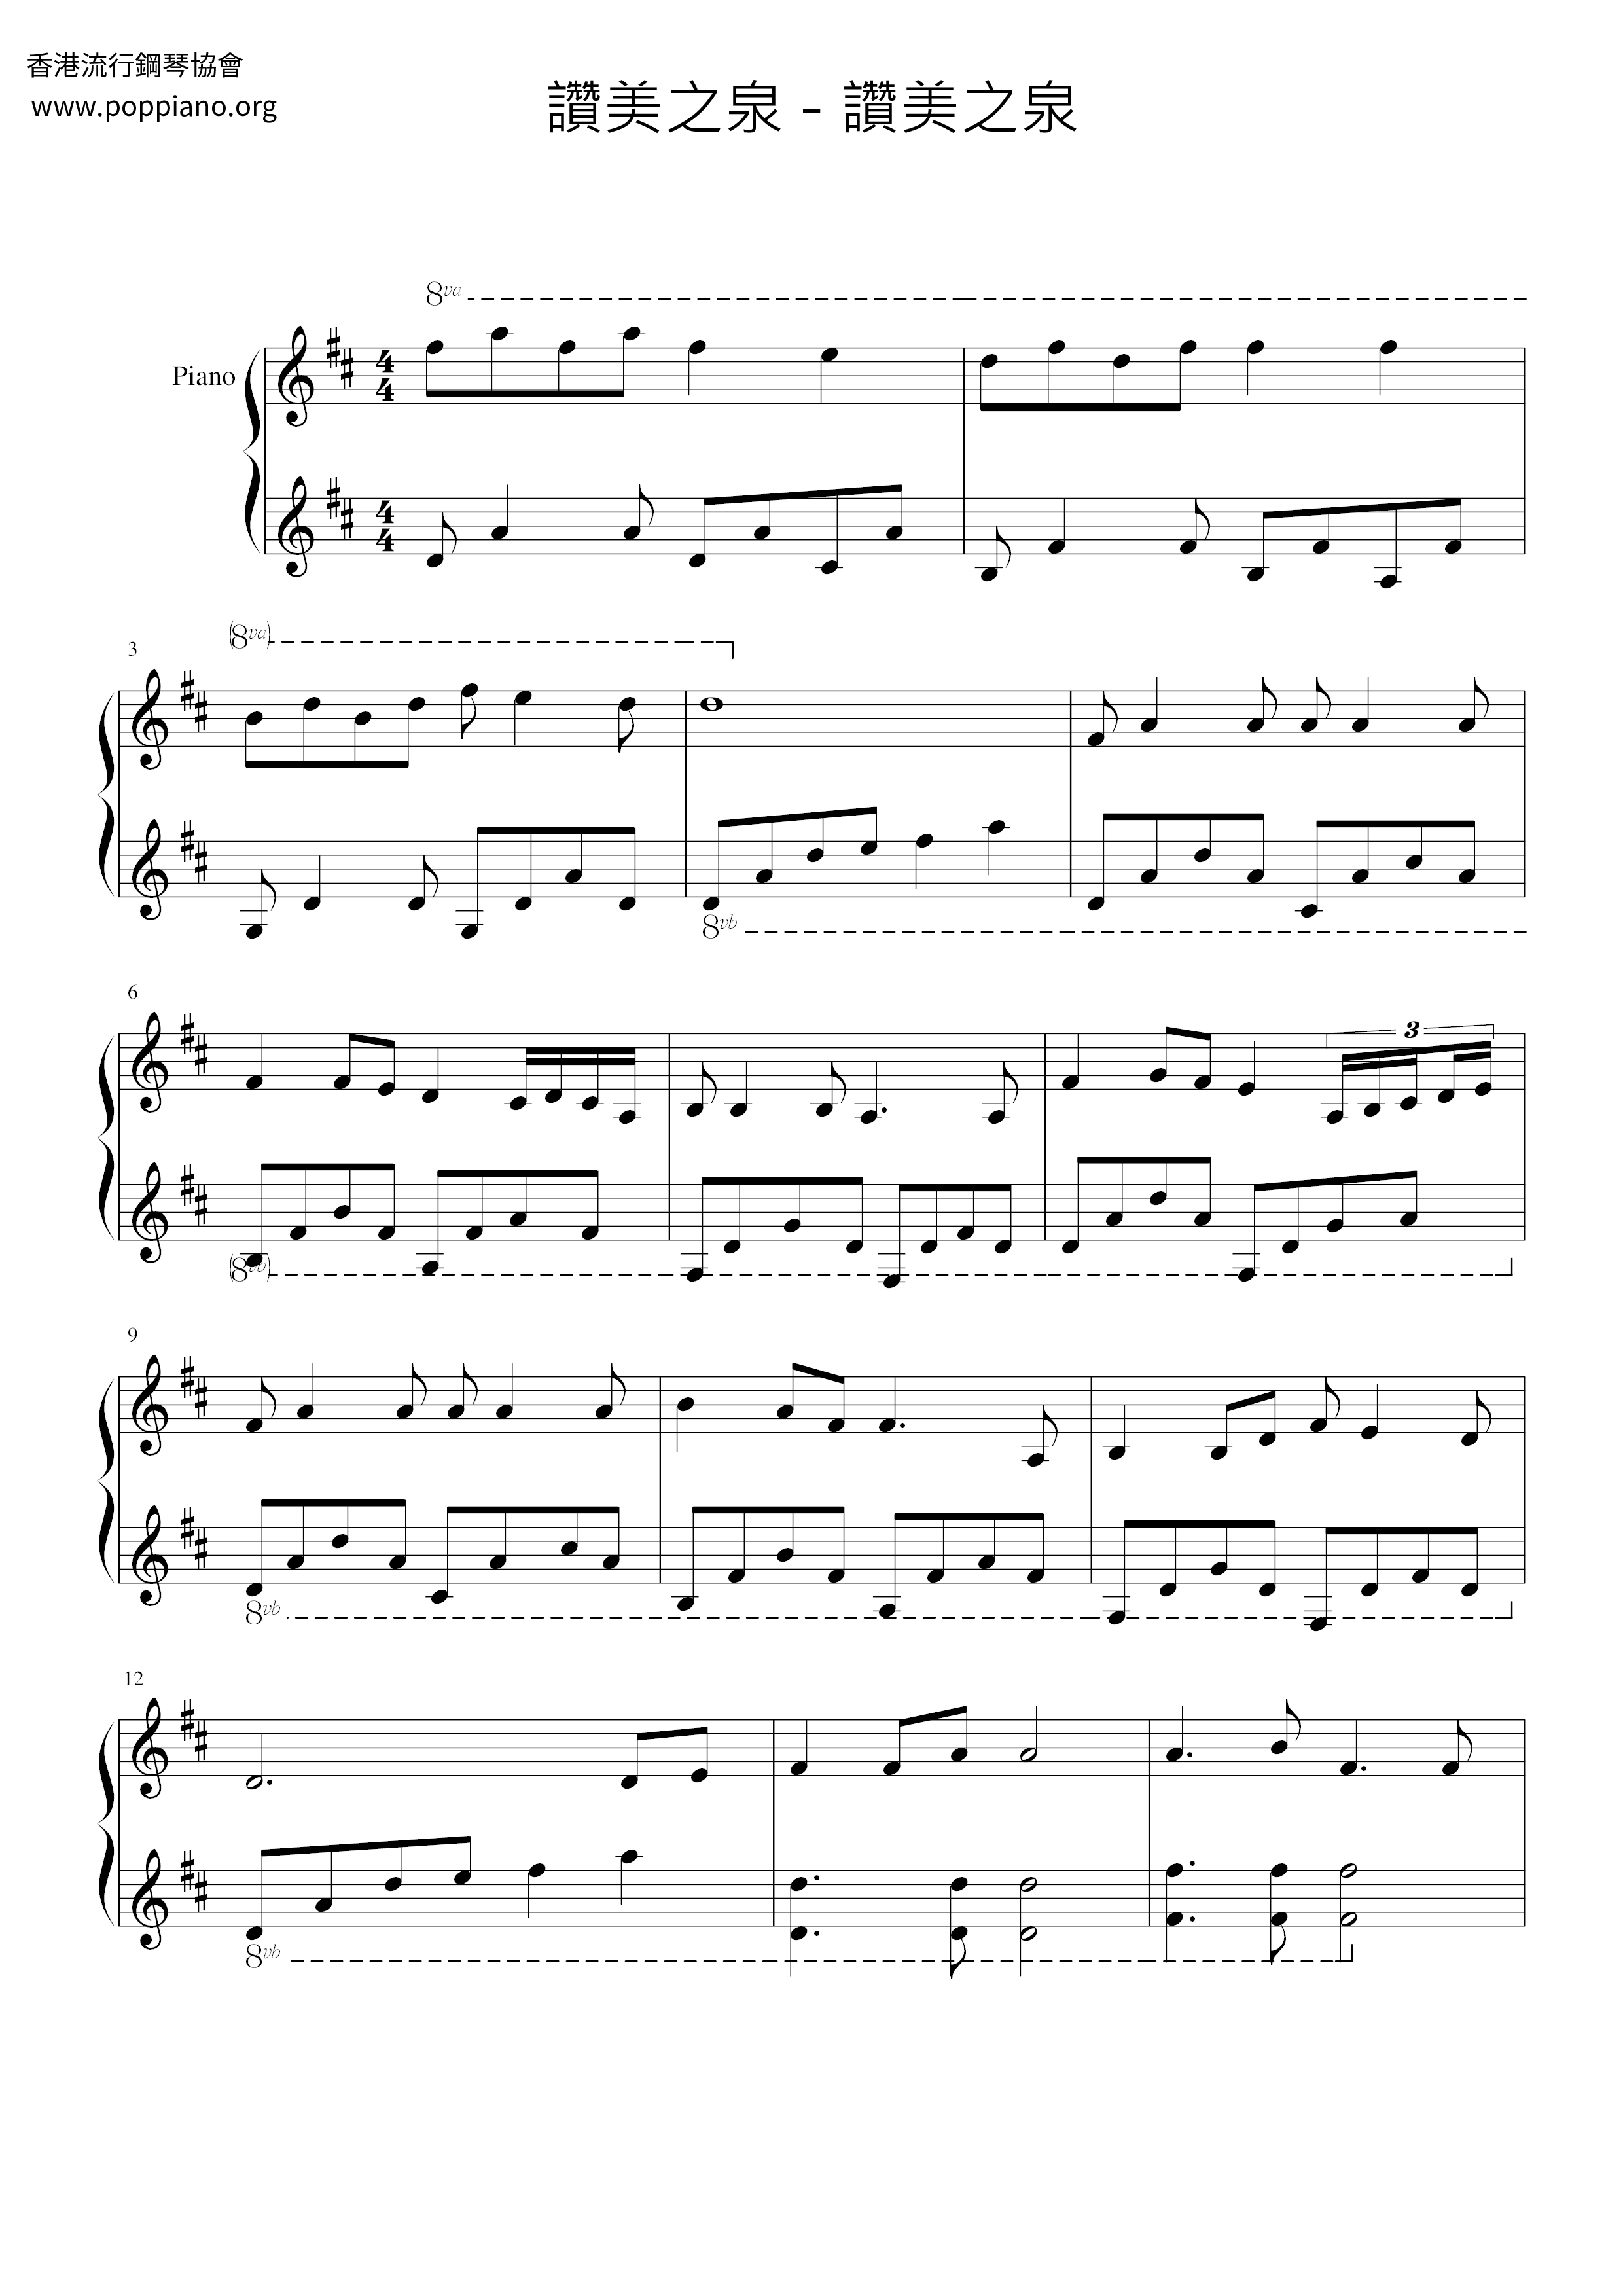 Fountain Of Praise Score